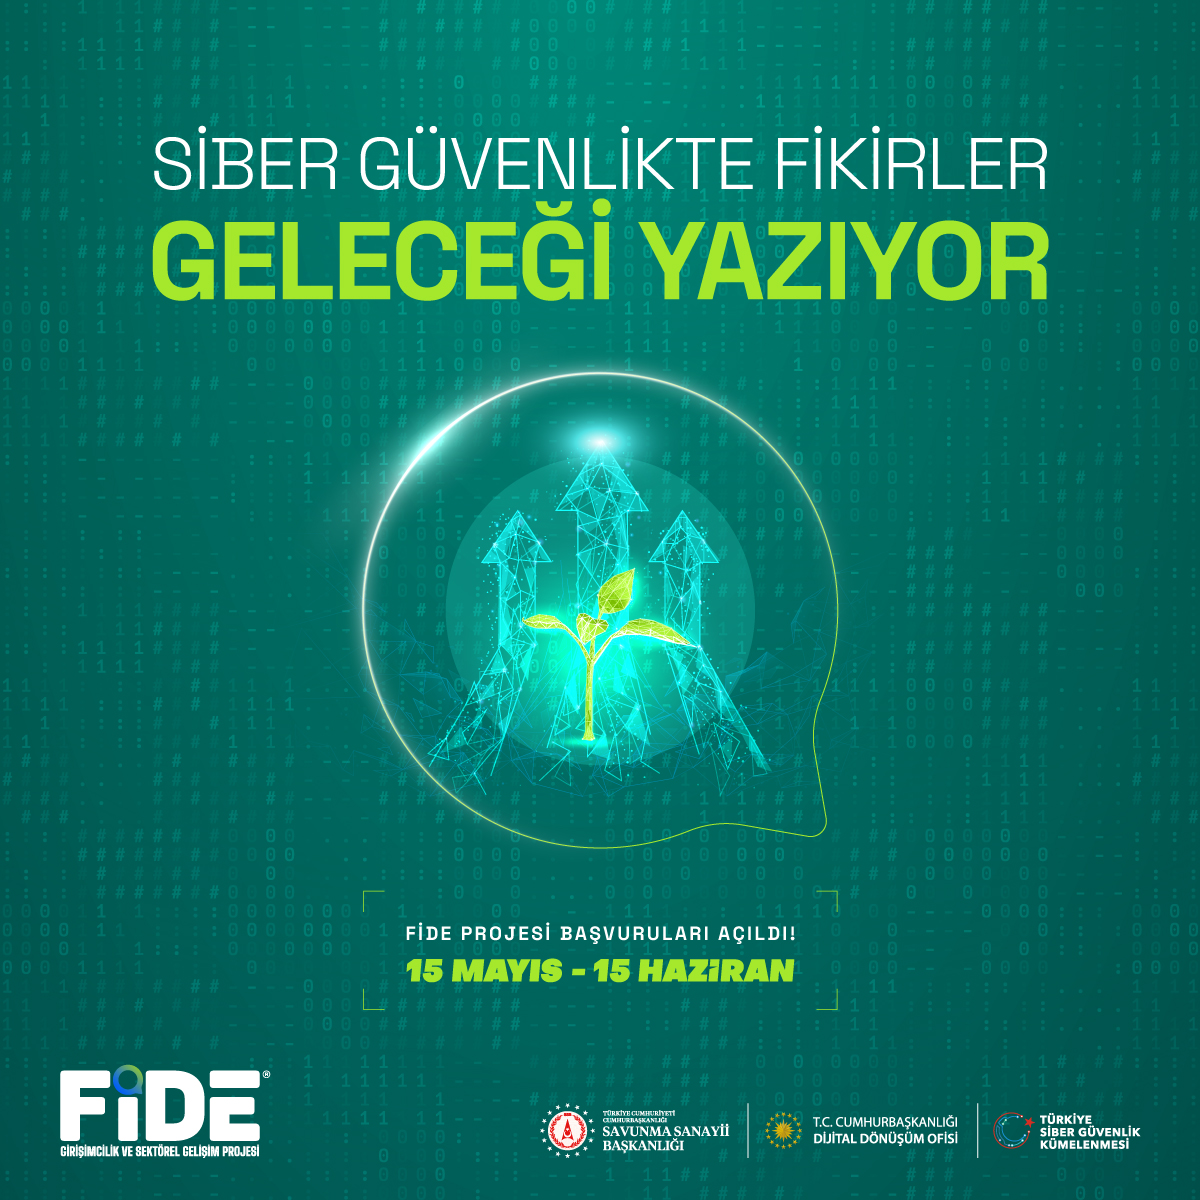 Siber güvenlikte fikirlerinle geleceği yazmaya hazırsan, başlıyoruz! Türkiye siber güvenlik ekosisteminin gelişmesi için hazırlanmış girişimcilik ve sektörel gelişim projesi olan FİDE Projesi’ne başvurmak ve tüm detaylarla ilgili bilgi edinmek için: fideprojesi@siberkume.com